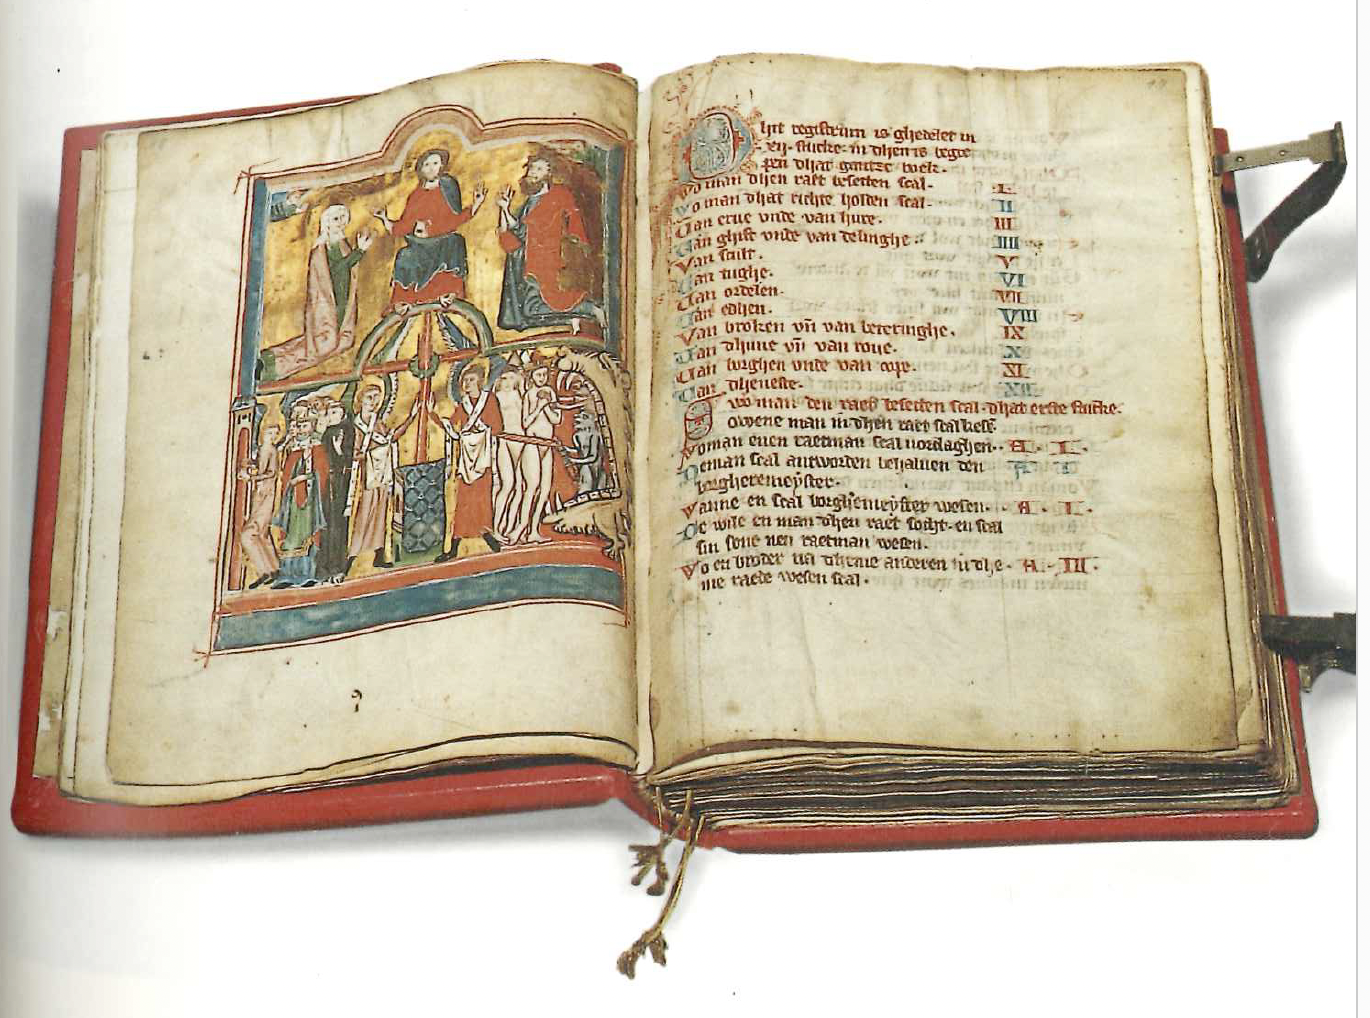 Mehr als 700 Jahre alt: das Rote Hamburger Stadtbuch von 1301. Es ist jetzt von der Unesco zum Weltdokumentenerbe erhoben worden.